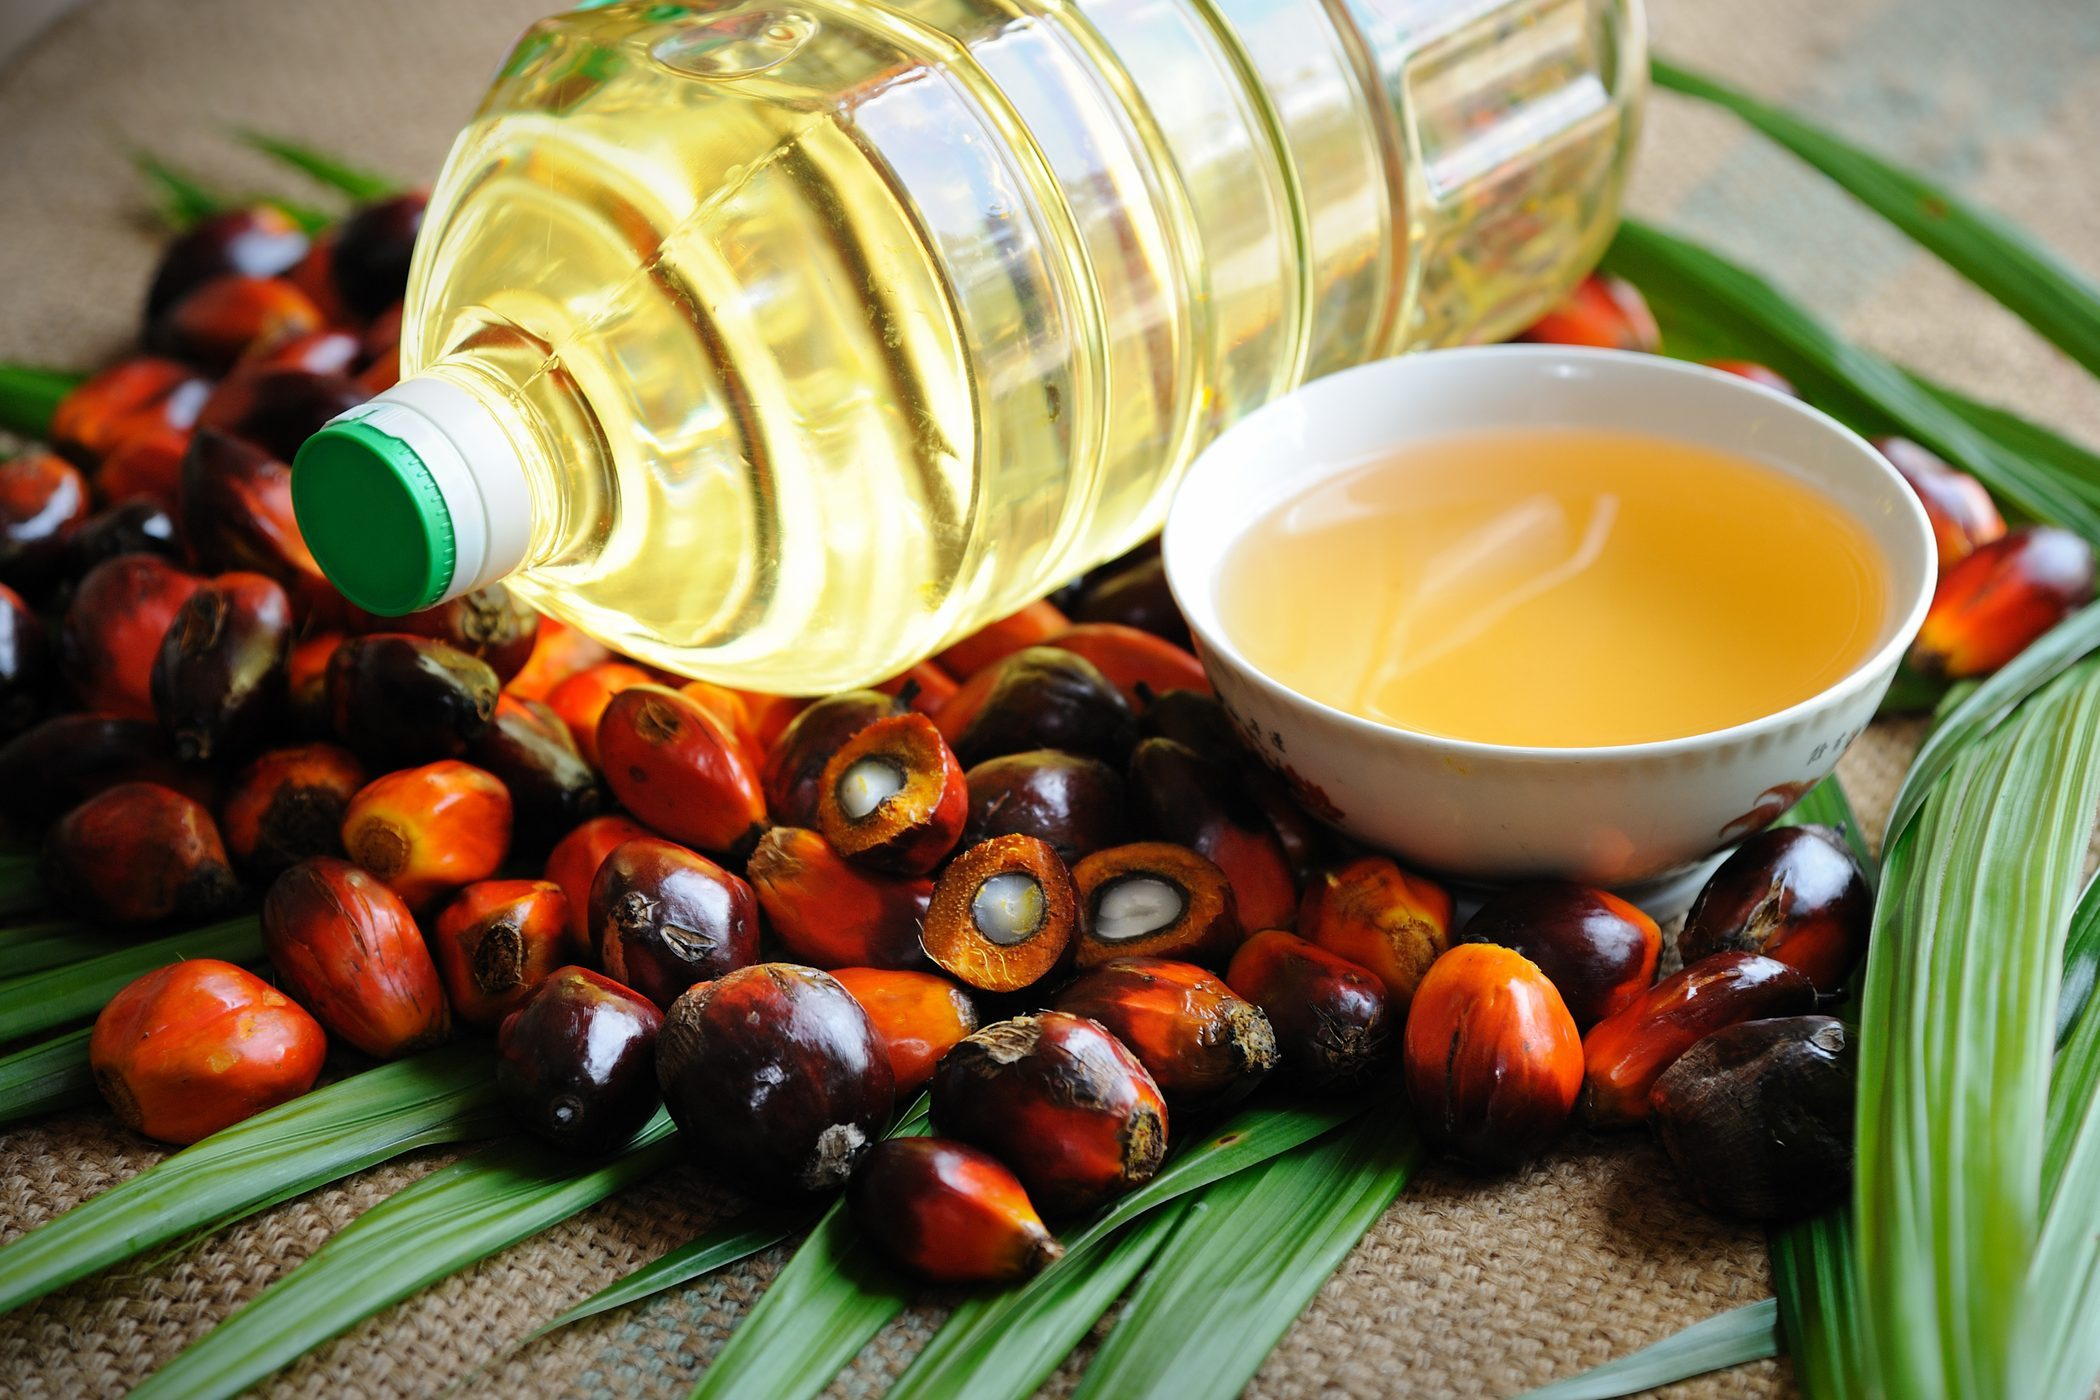 Ученые обнаружили опасное свойство пальмового масла